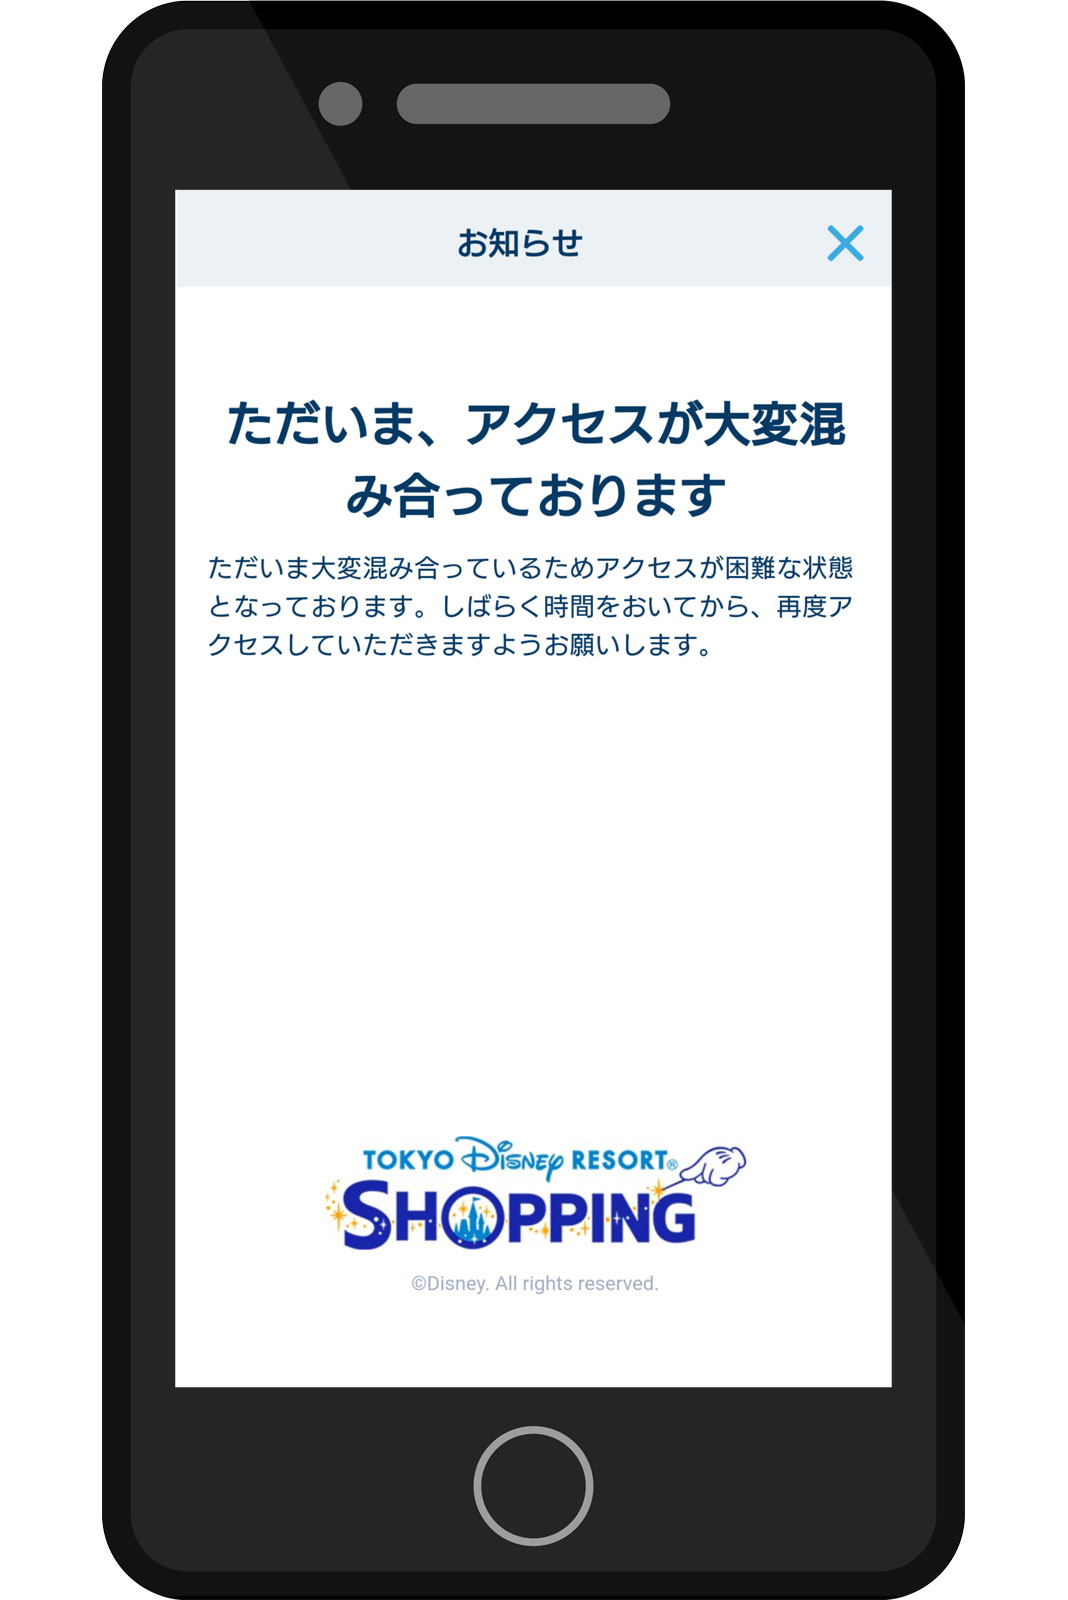 東京ディズニー・アプリ グッズのオンライン販売